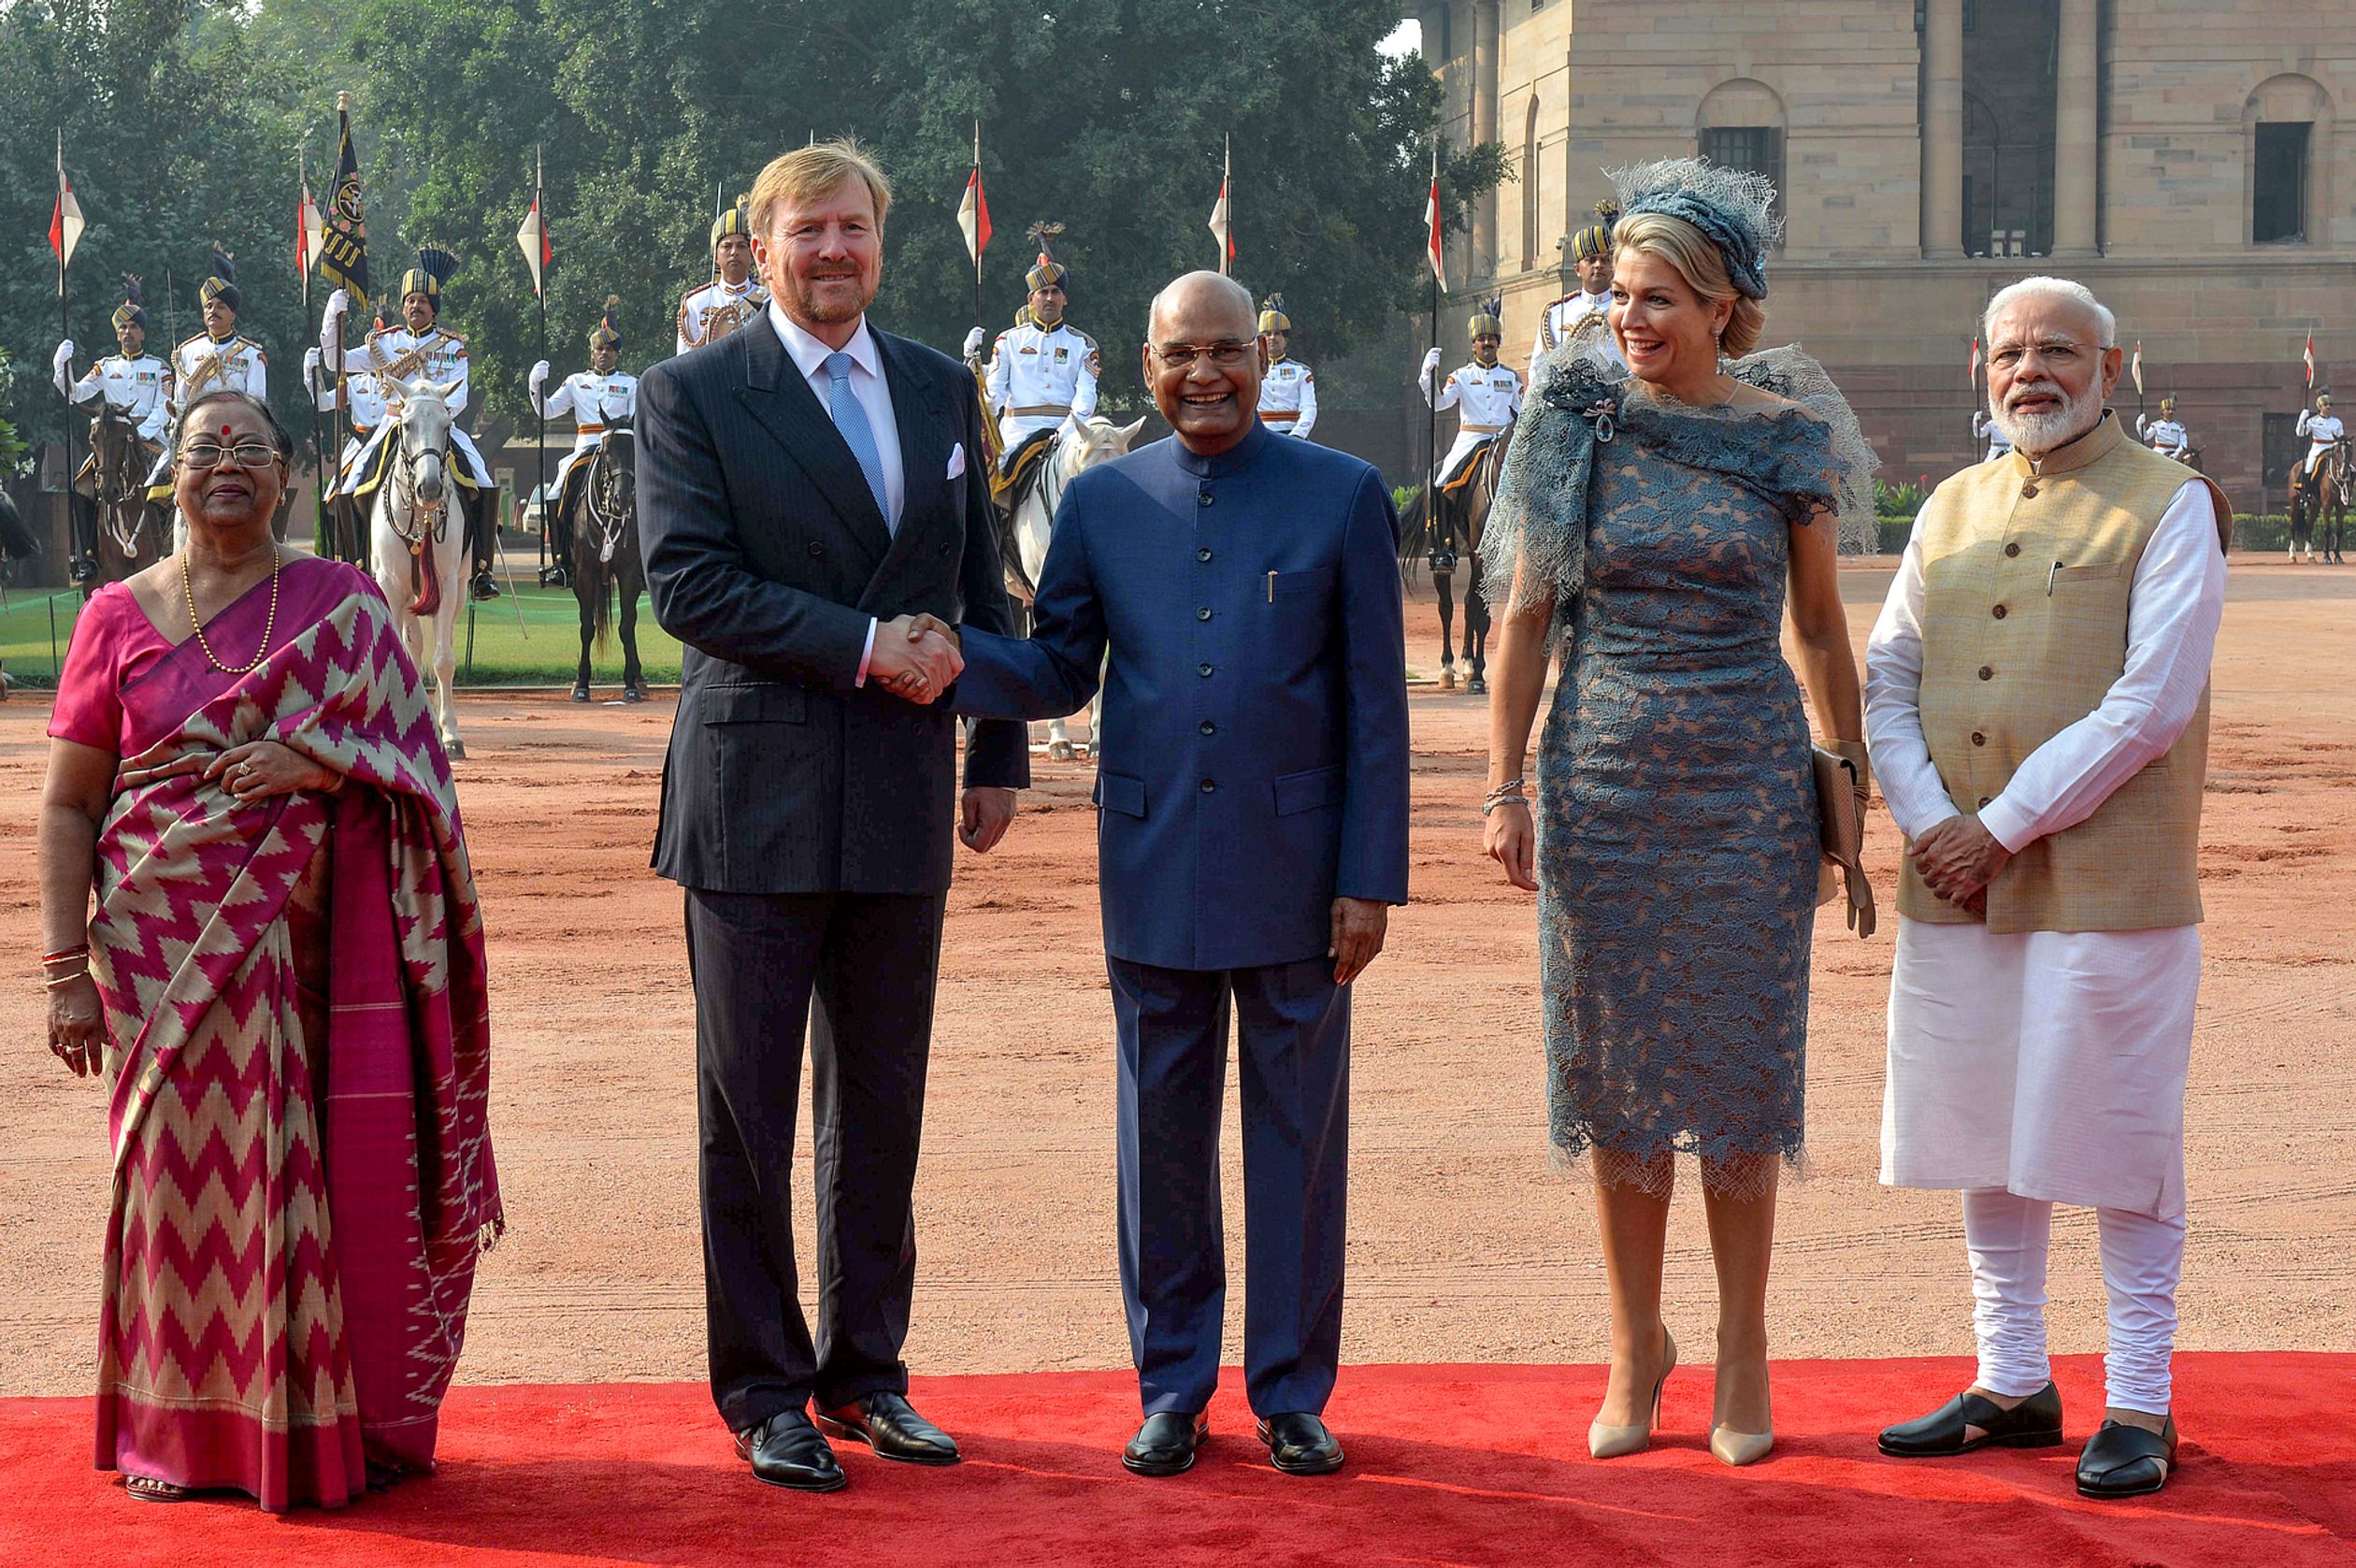 Koning Willem-Alexander schudt de hand van president Ram Nath Kovind. Links staat de echtgenote van